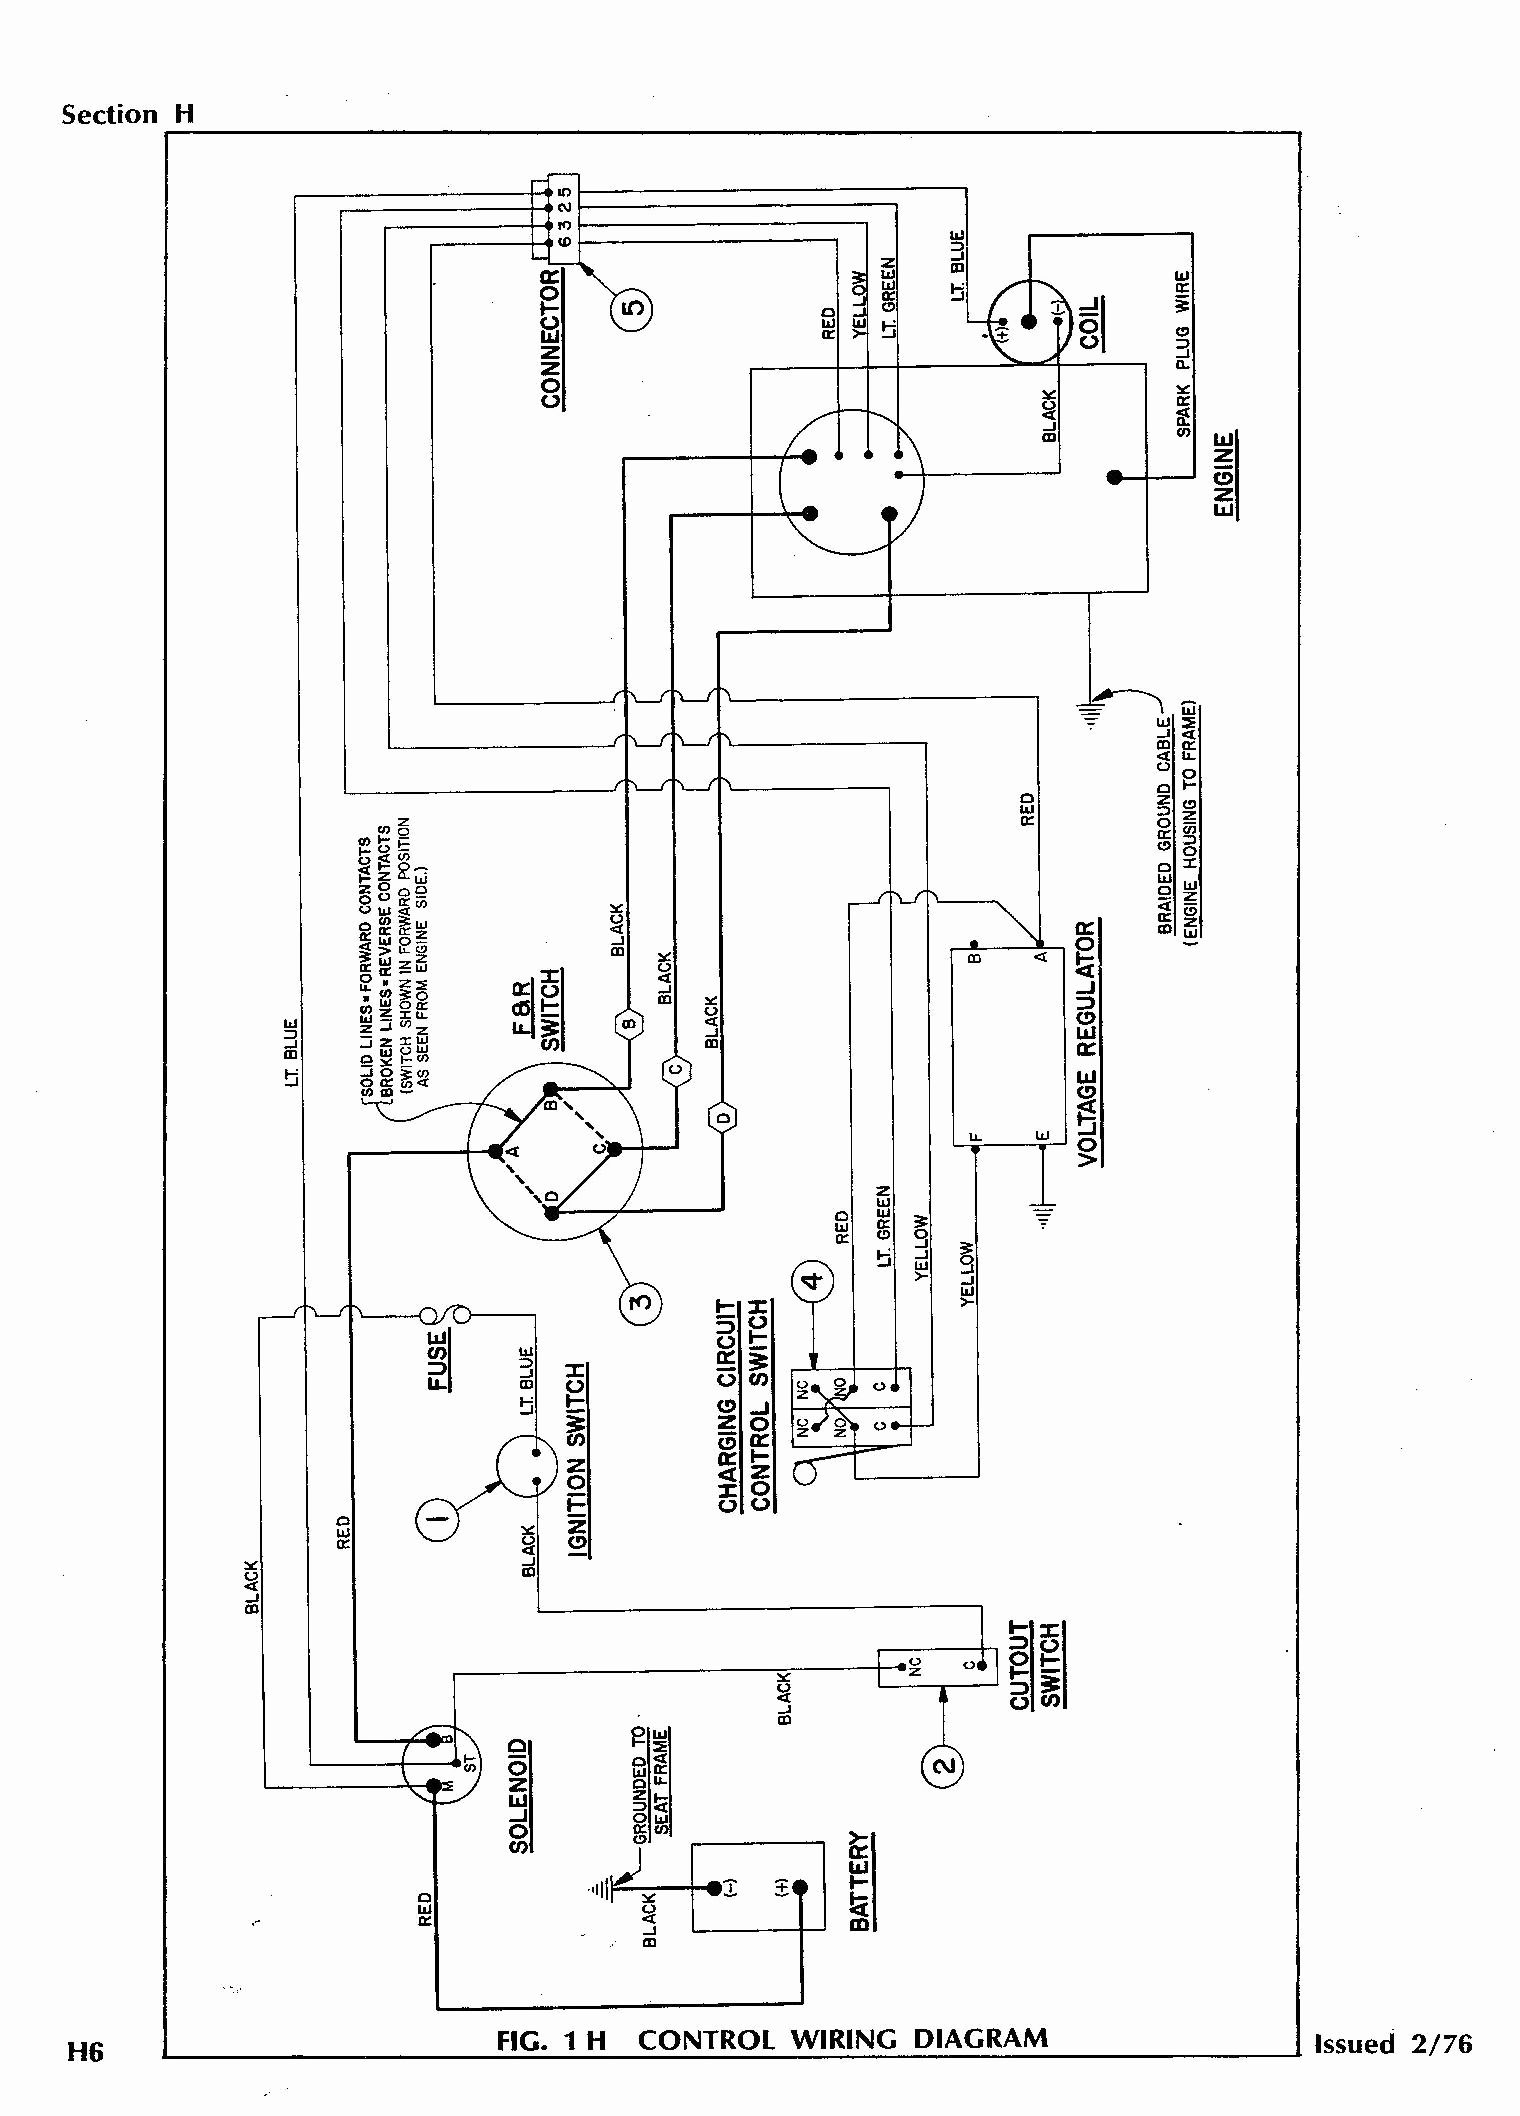 Workhorse St480 Gas Ezgo Wiring Diagram - Data Wiring Diagram Site - Ez Go Wiring Diagram 36 Volt